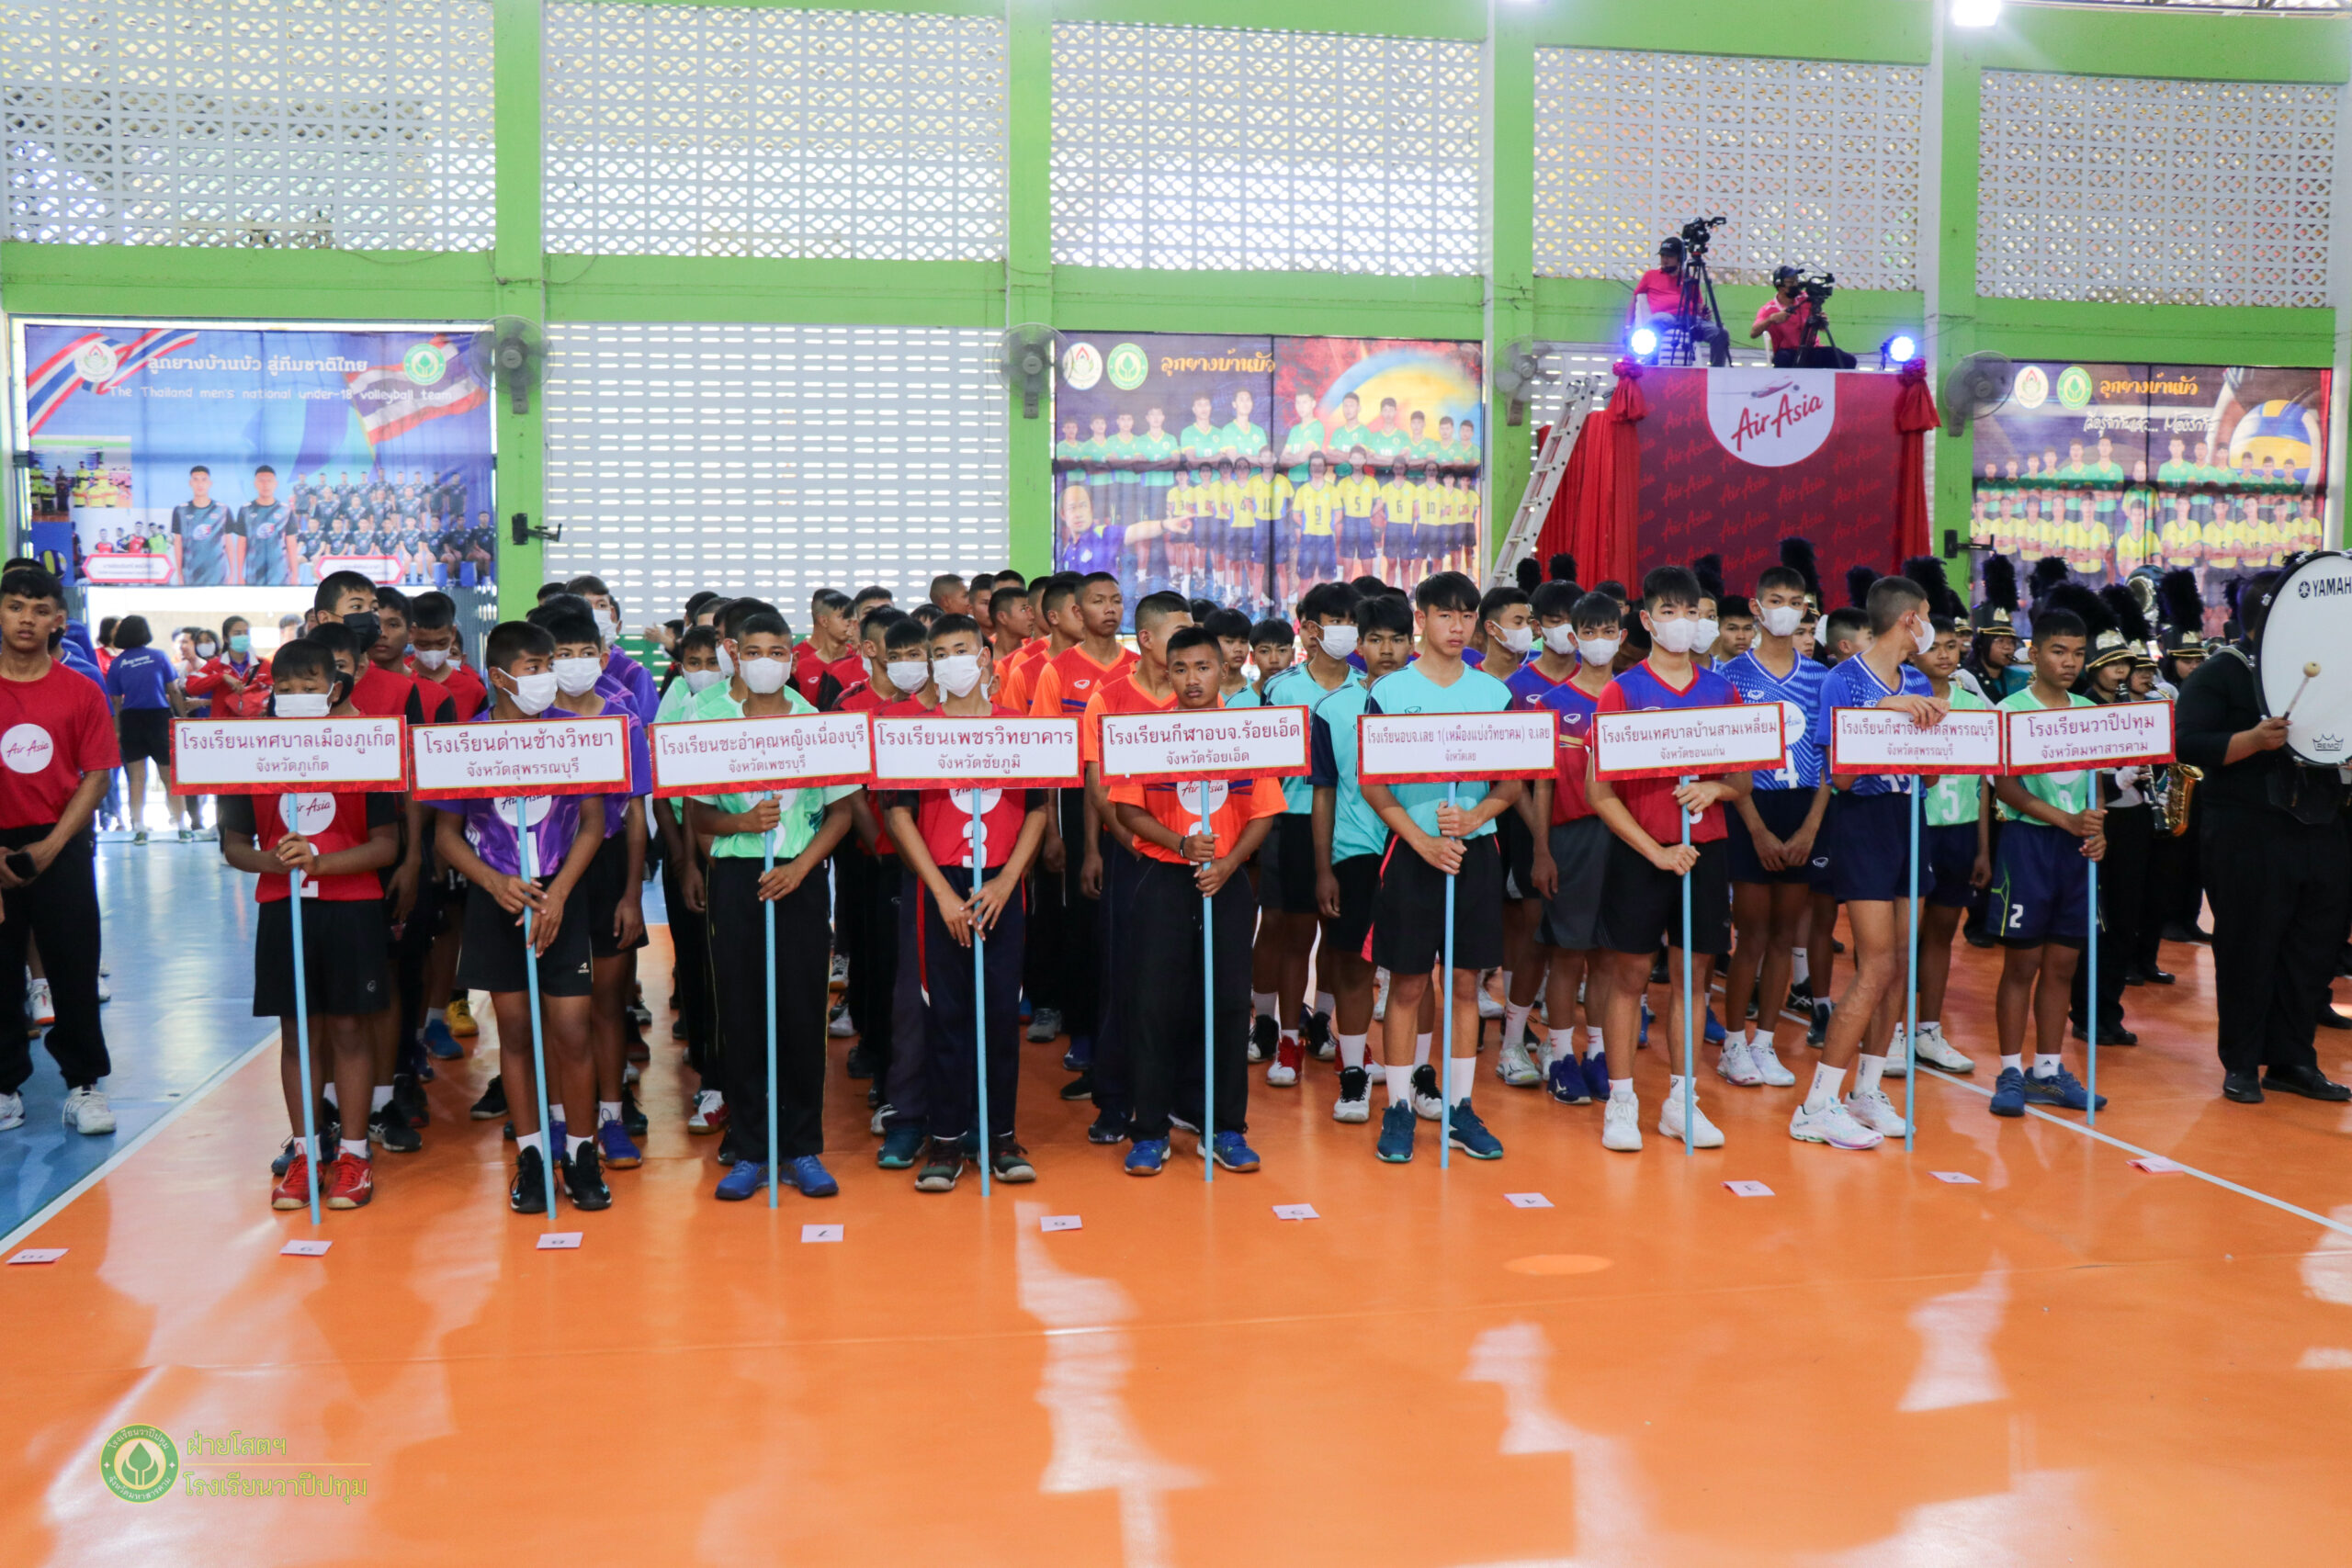 เปิดการแข่งขันกีฬาวอลเลย์บอลยุวชนแอร์เอเชีย รุ่นอายุไม่เกิน 14 ปีชนะเลิศแห่งประเทศไทย ครั้งที่ 6